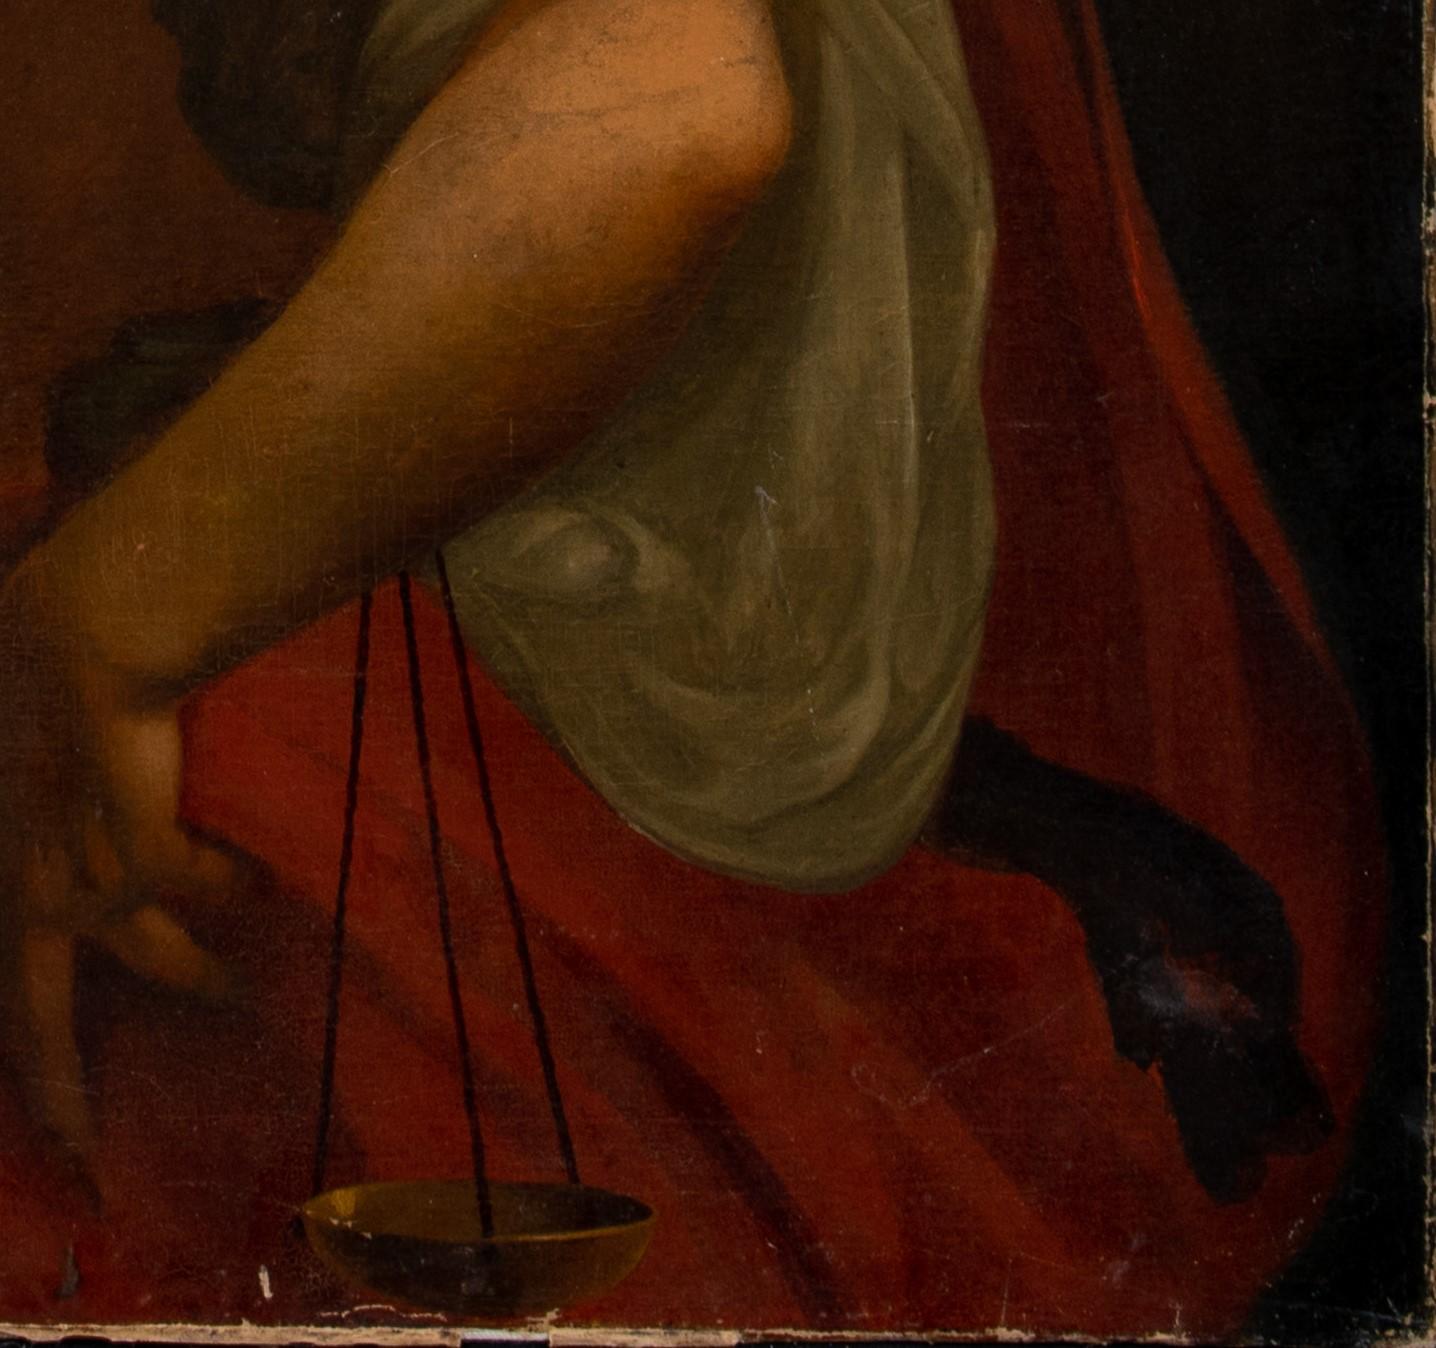 Thémis, déesse de la justice, 17ème siècle

École italienne

Immense représentation italienne du XVIIe siècle de Thémis, déesse grecque de la justice, huile sur toile. Excellente qualité et état, photo non encadrée mais nous sommes en train de faire